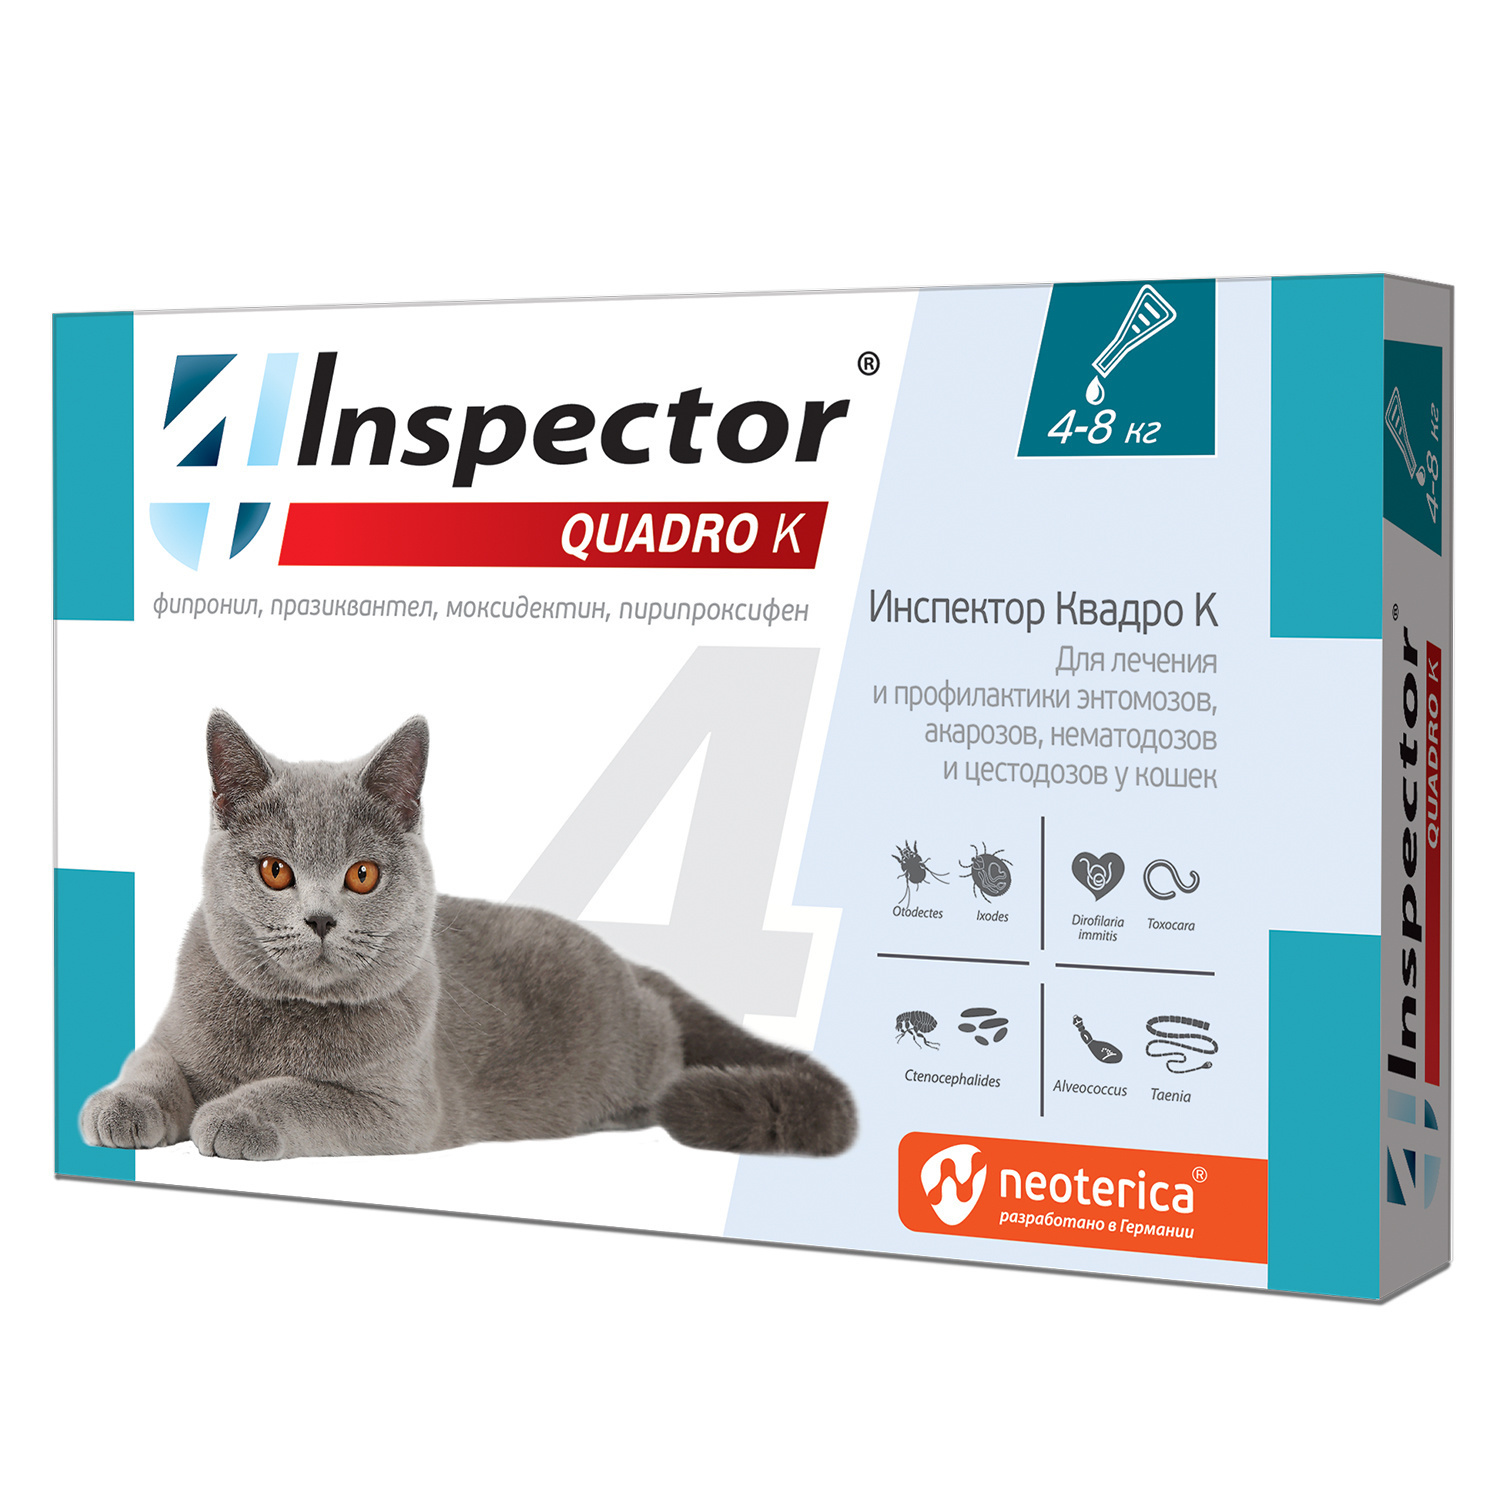 Inspector Inspector quadro капли на холку для кошек 4-8 кг, от глистов, насекомых, клещей (180 г) inspector inspector таблетки quadro для кошек и собак 8 16 кг от глистов насекомых клещей 15 г